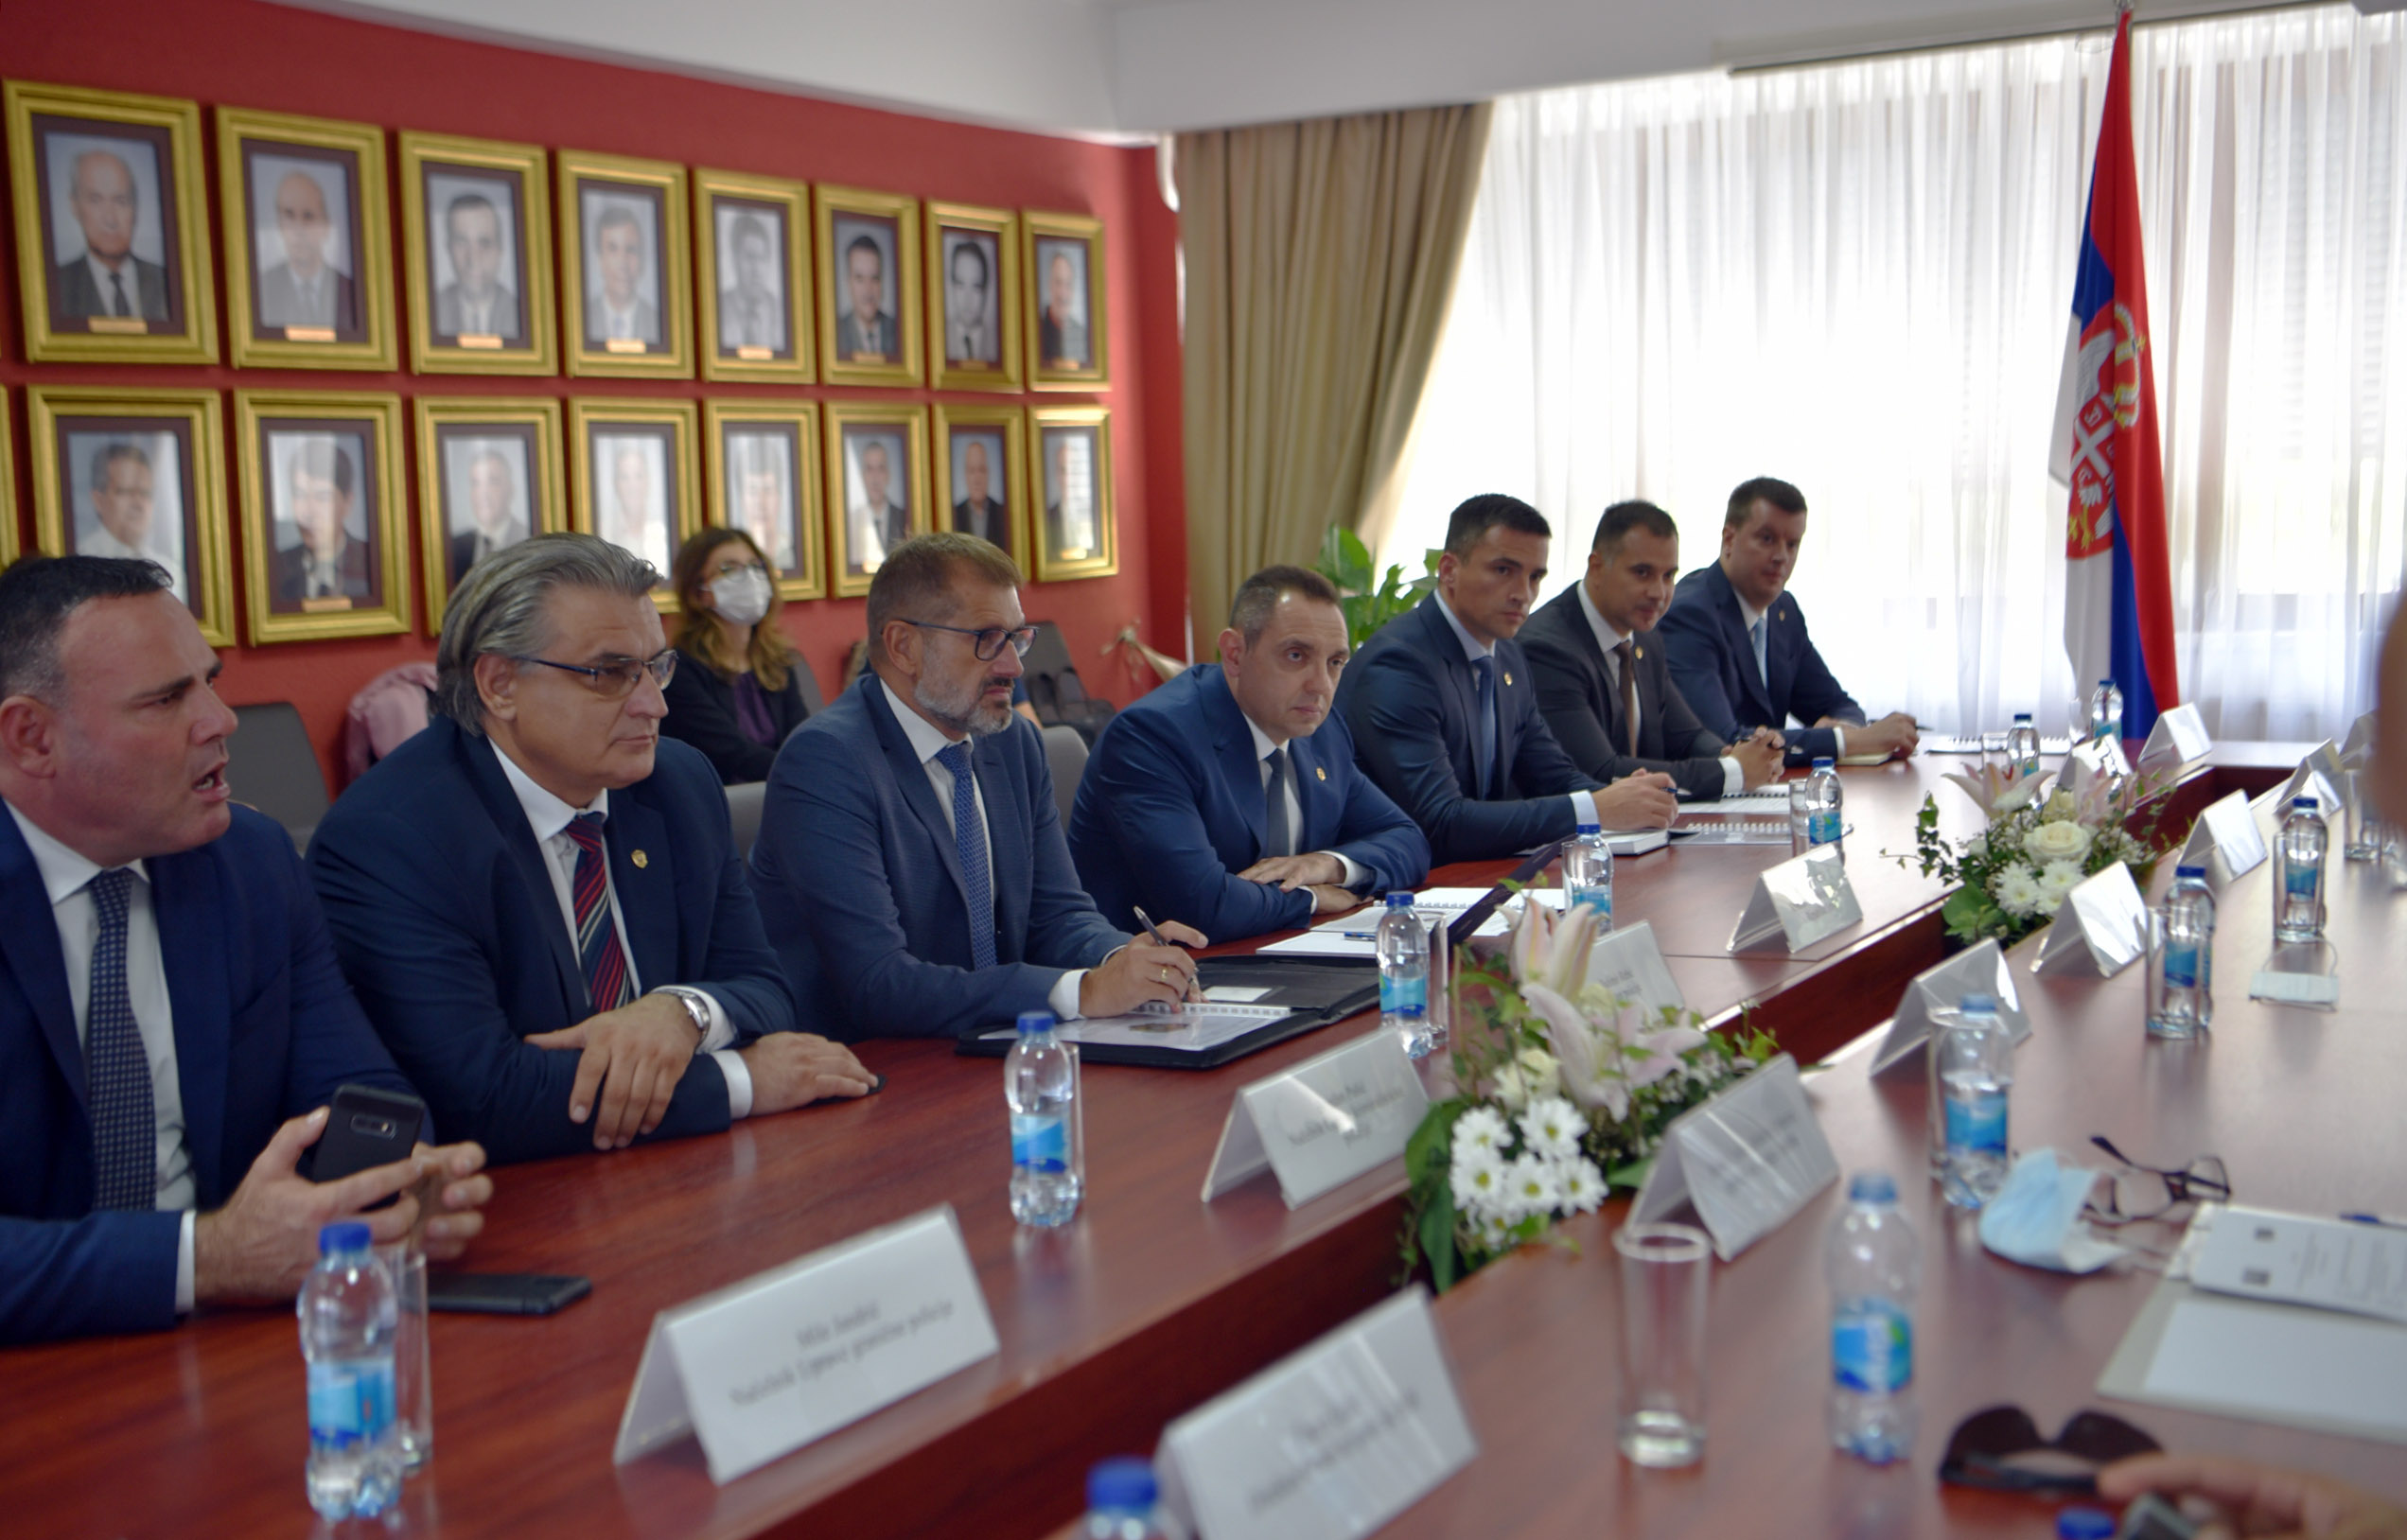 Министри Вулин и Цикотић потписали више споразума који ће олакшати живот грађанима обе државе